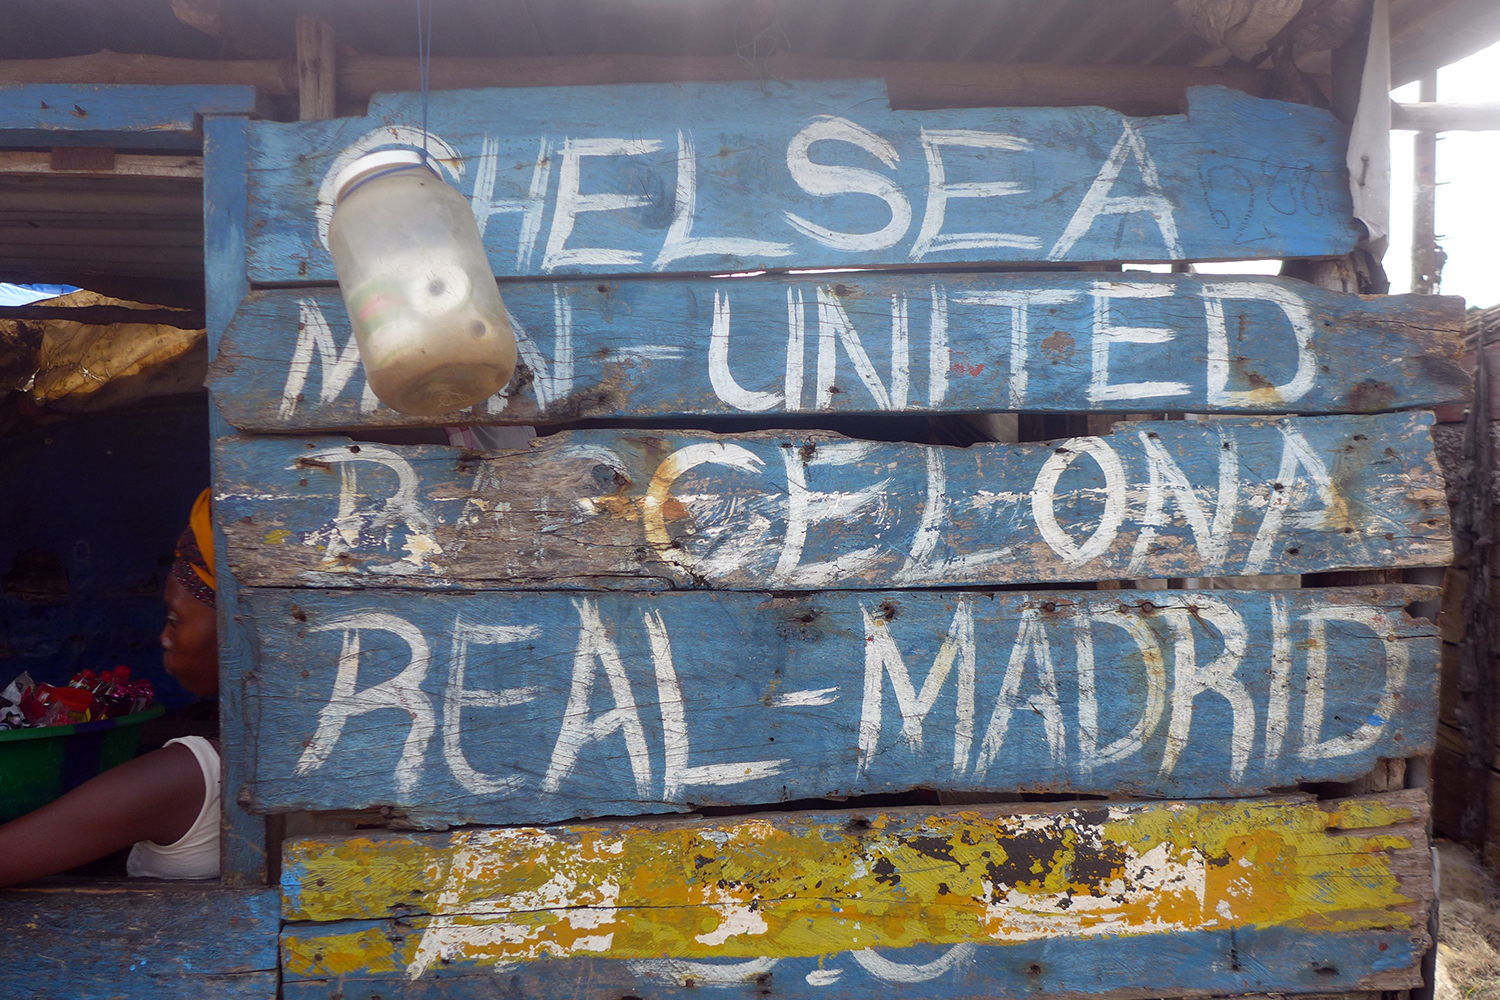 Le nom des grands clubs européens peints sur la devanture d’un maquis (bar) dans le port de pêche de Koukoudé.